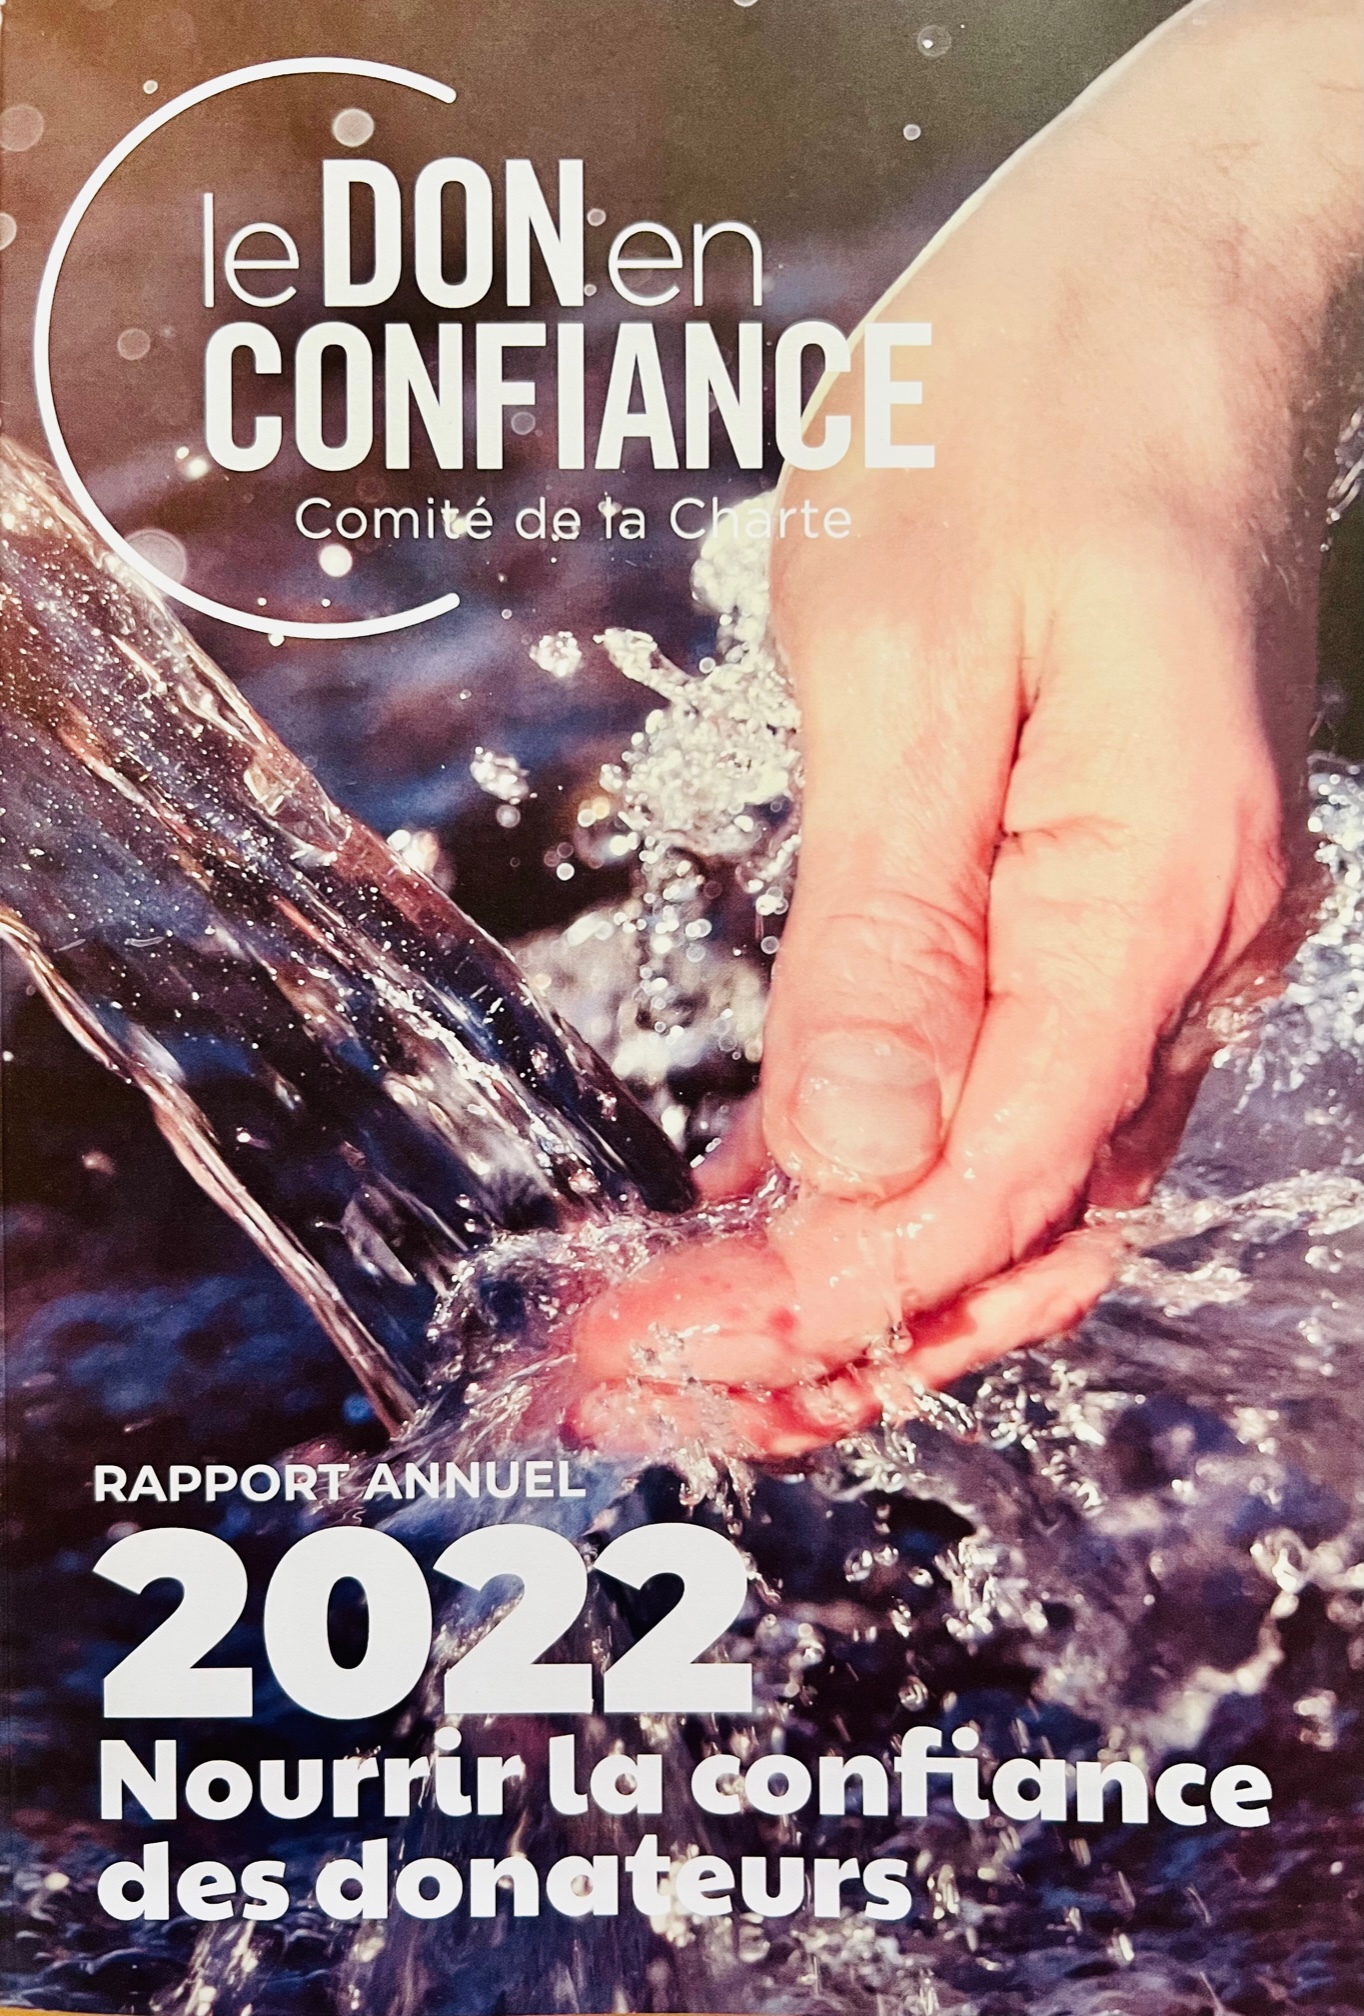 page de couv Rapport annuel 2022 Don en Confiance